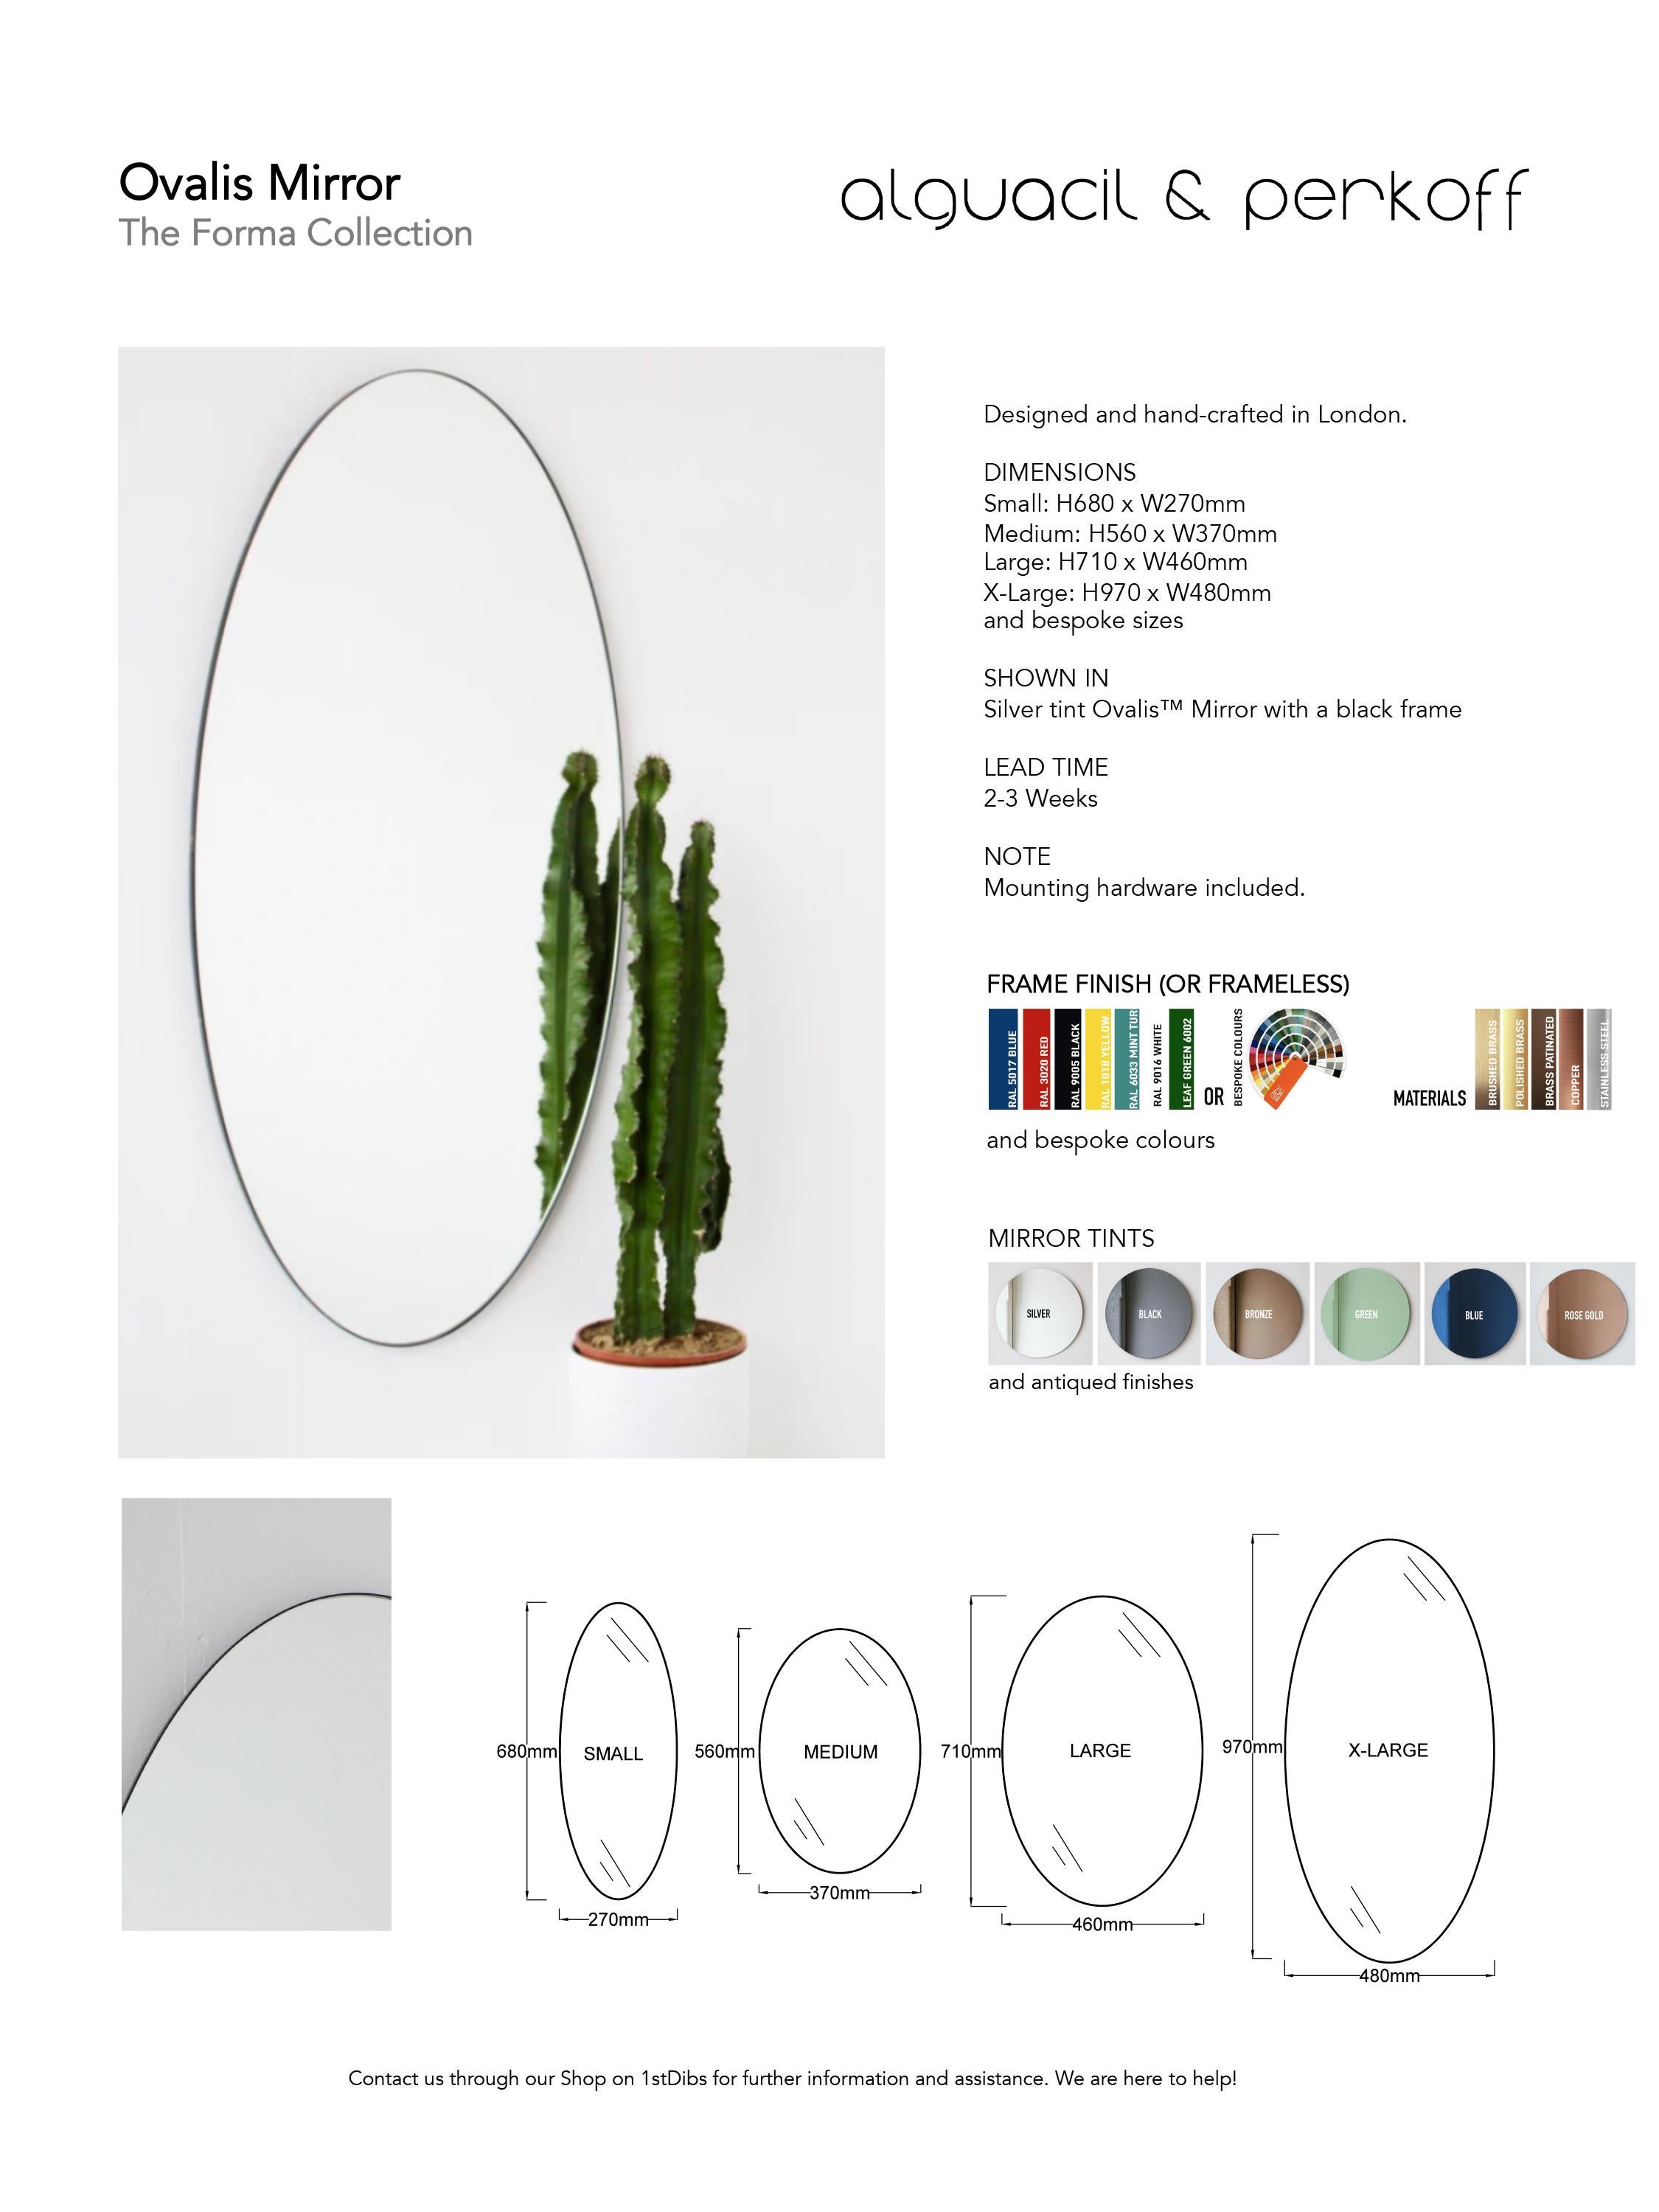 Ovalis Deckenspiegel in Form eines ovalen Spiegels mit mattem schwarzem Rahmen (Aluminium) im Angebot